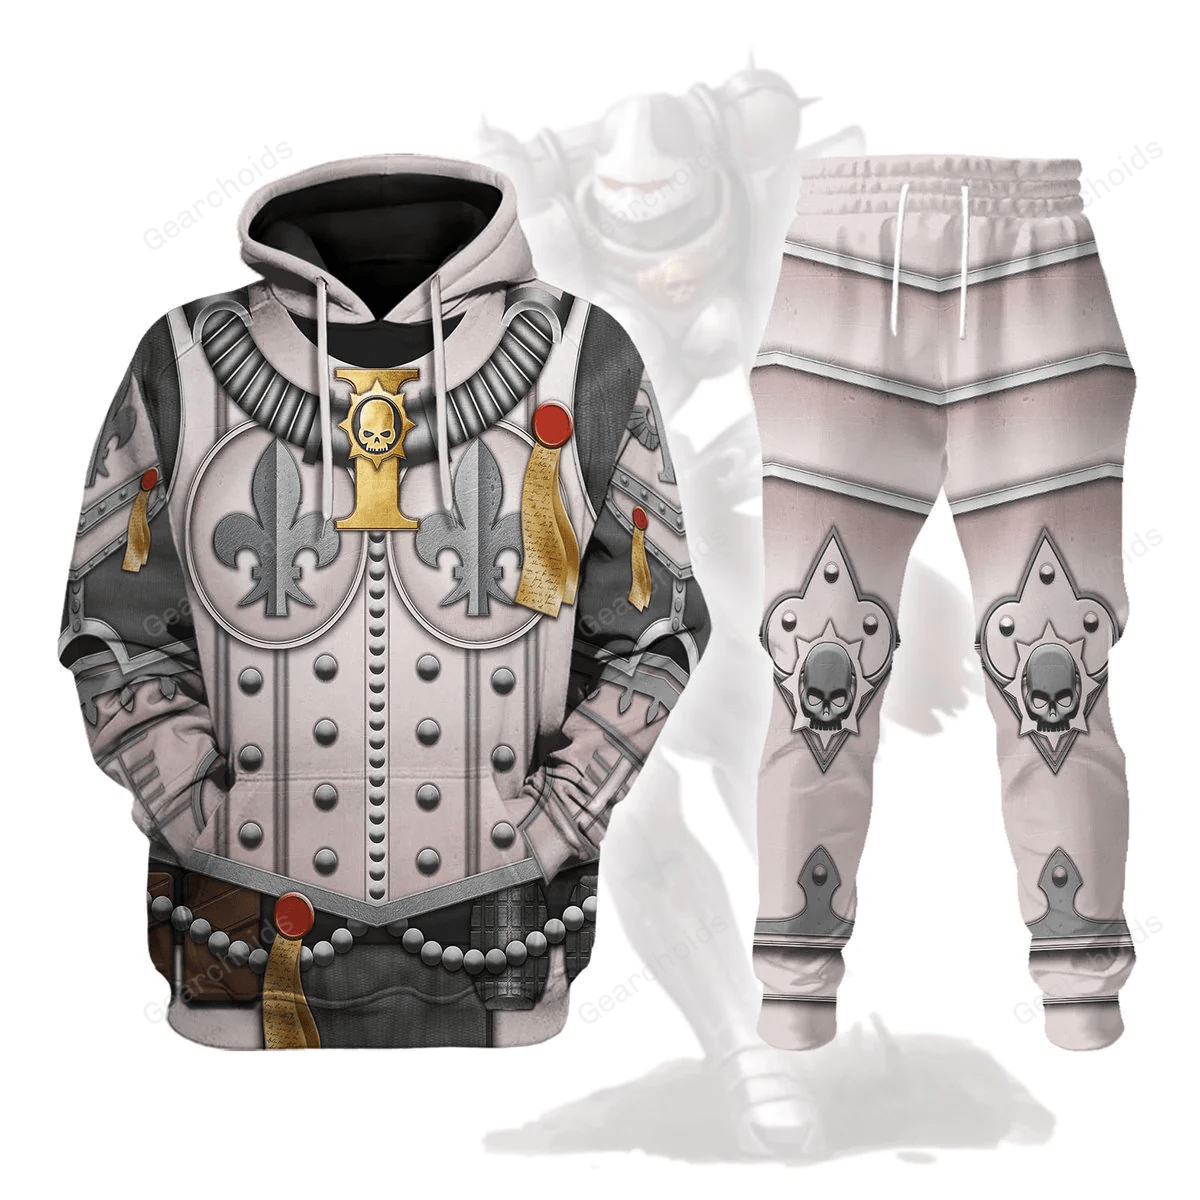 Order Of The Sacred Rose - Costume Cosplay Hoodie Sweatshirt Sweatpants